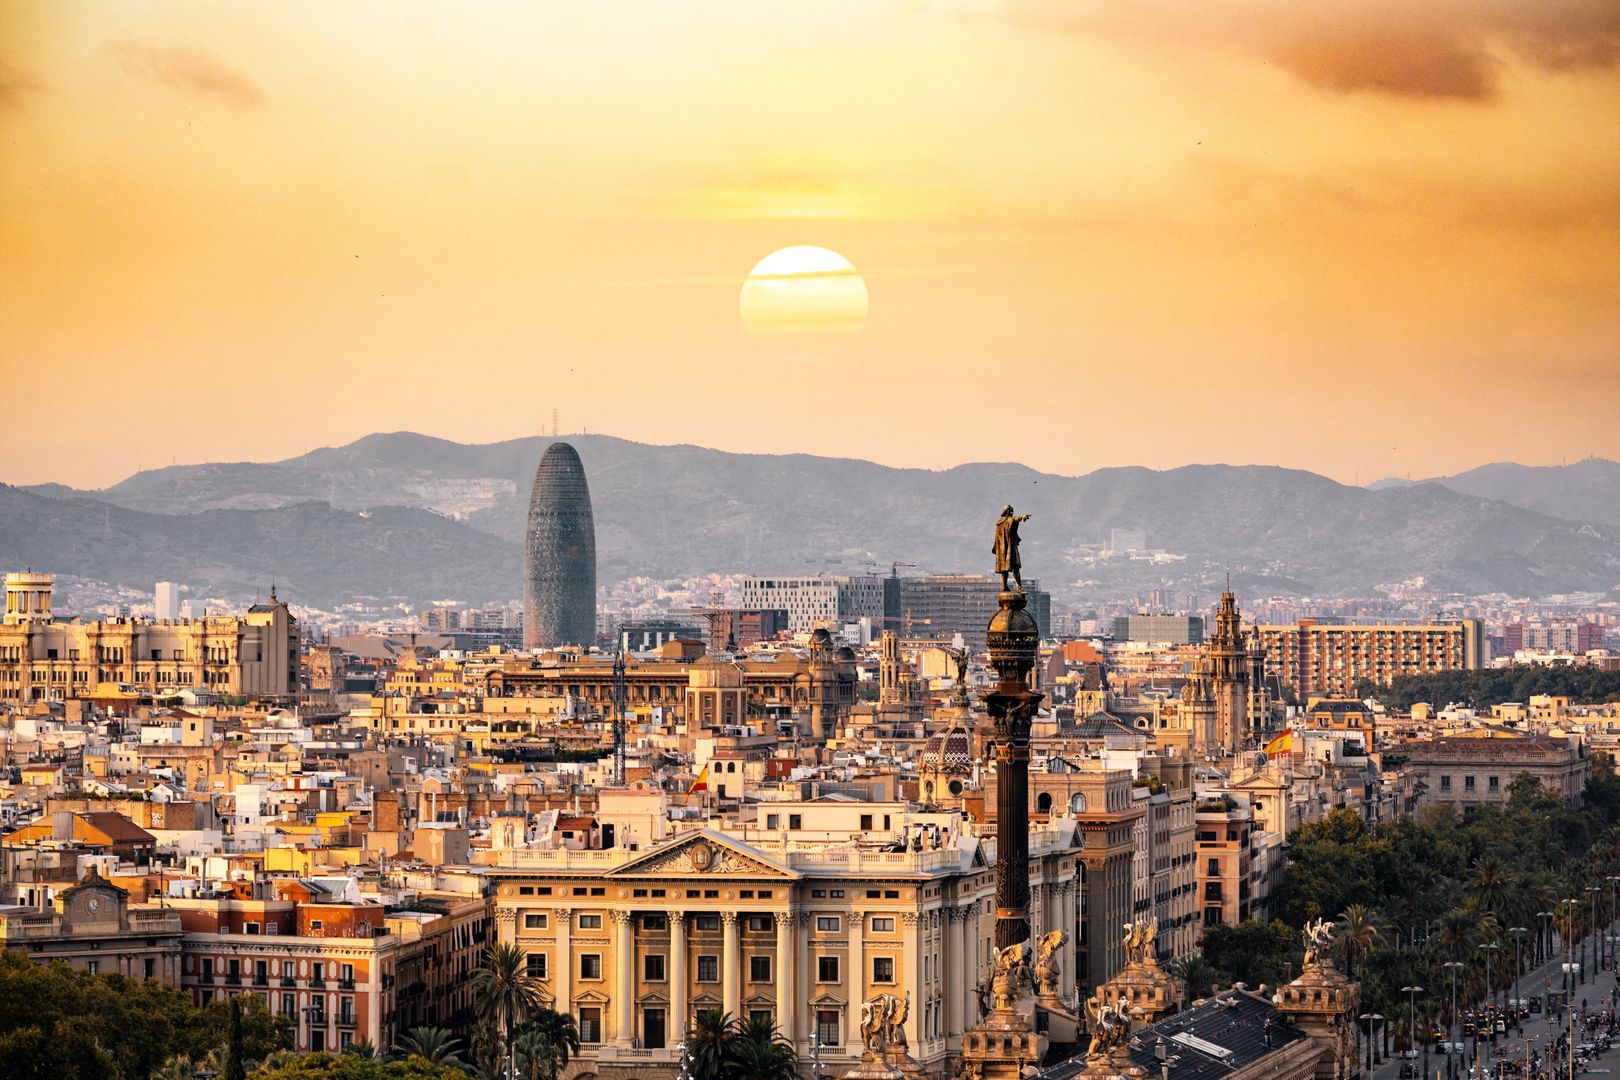 Tanie loty do Barcelony: Sekrety korzystania z atrakcyjnych ofert i odkrywanie katalońskich skarbów